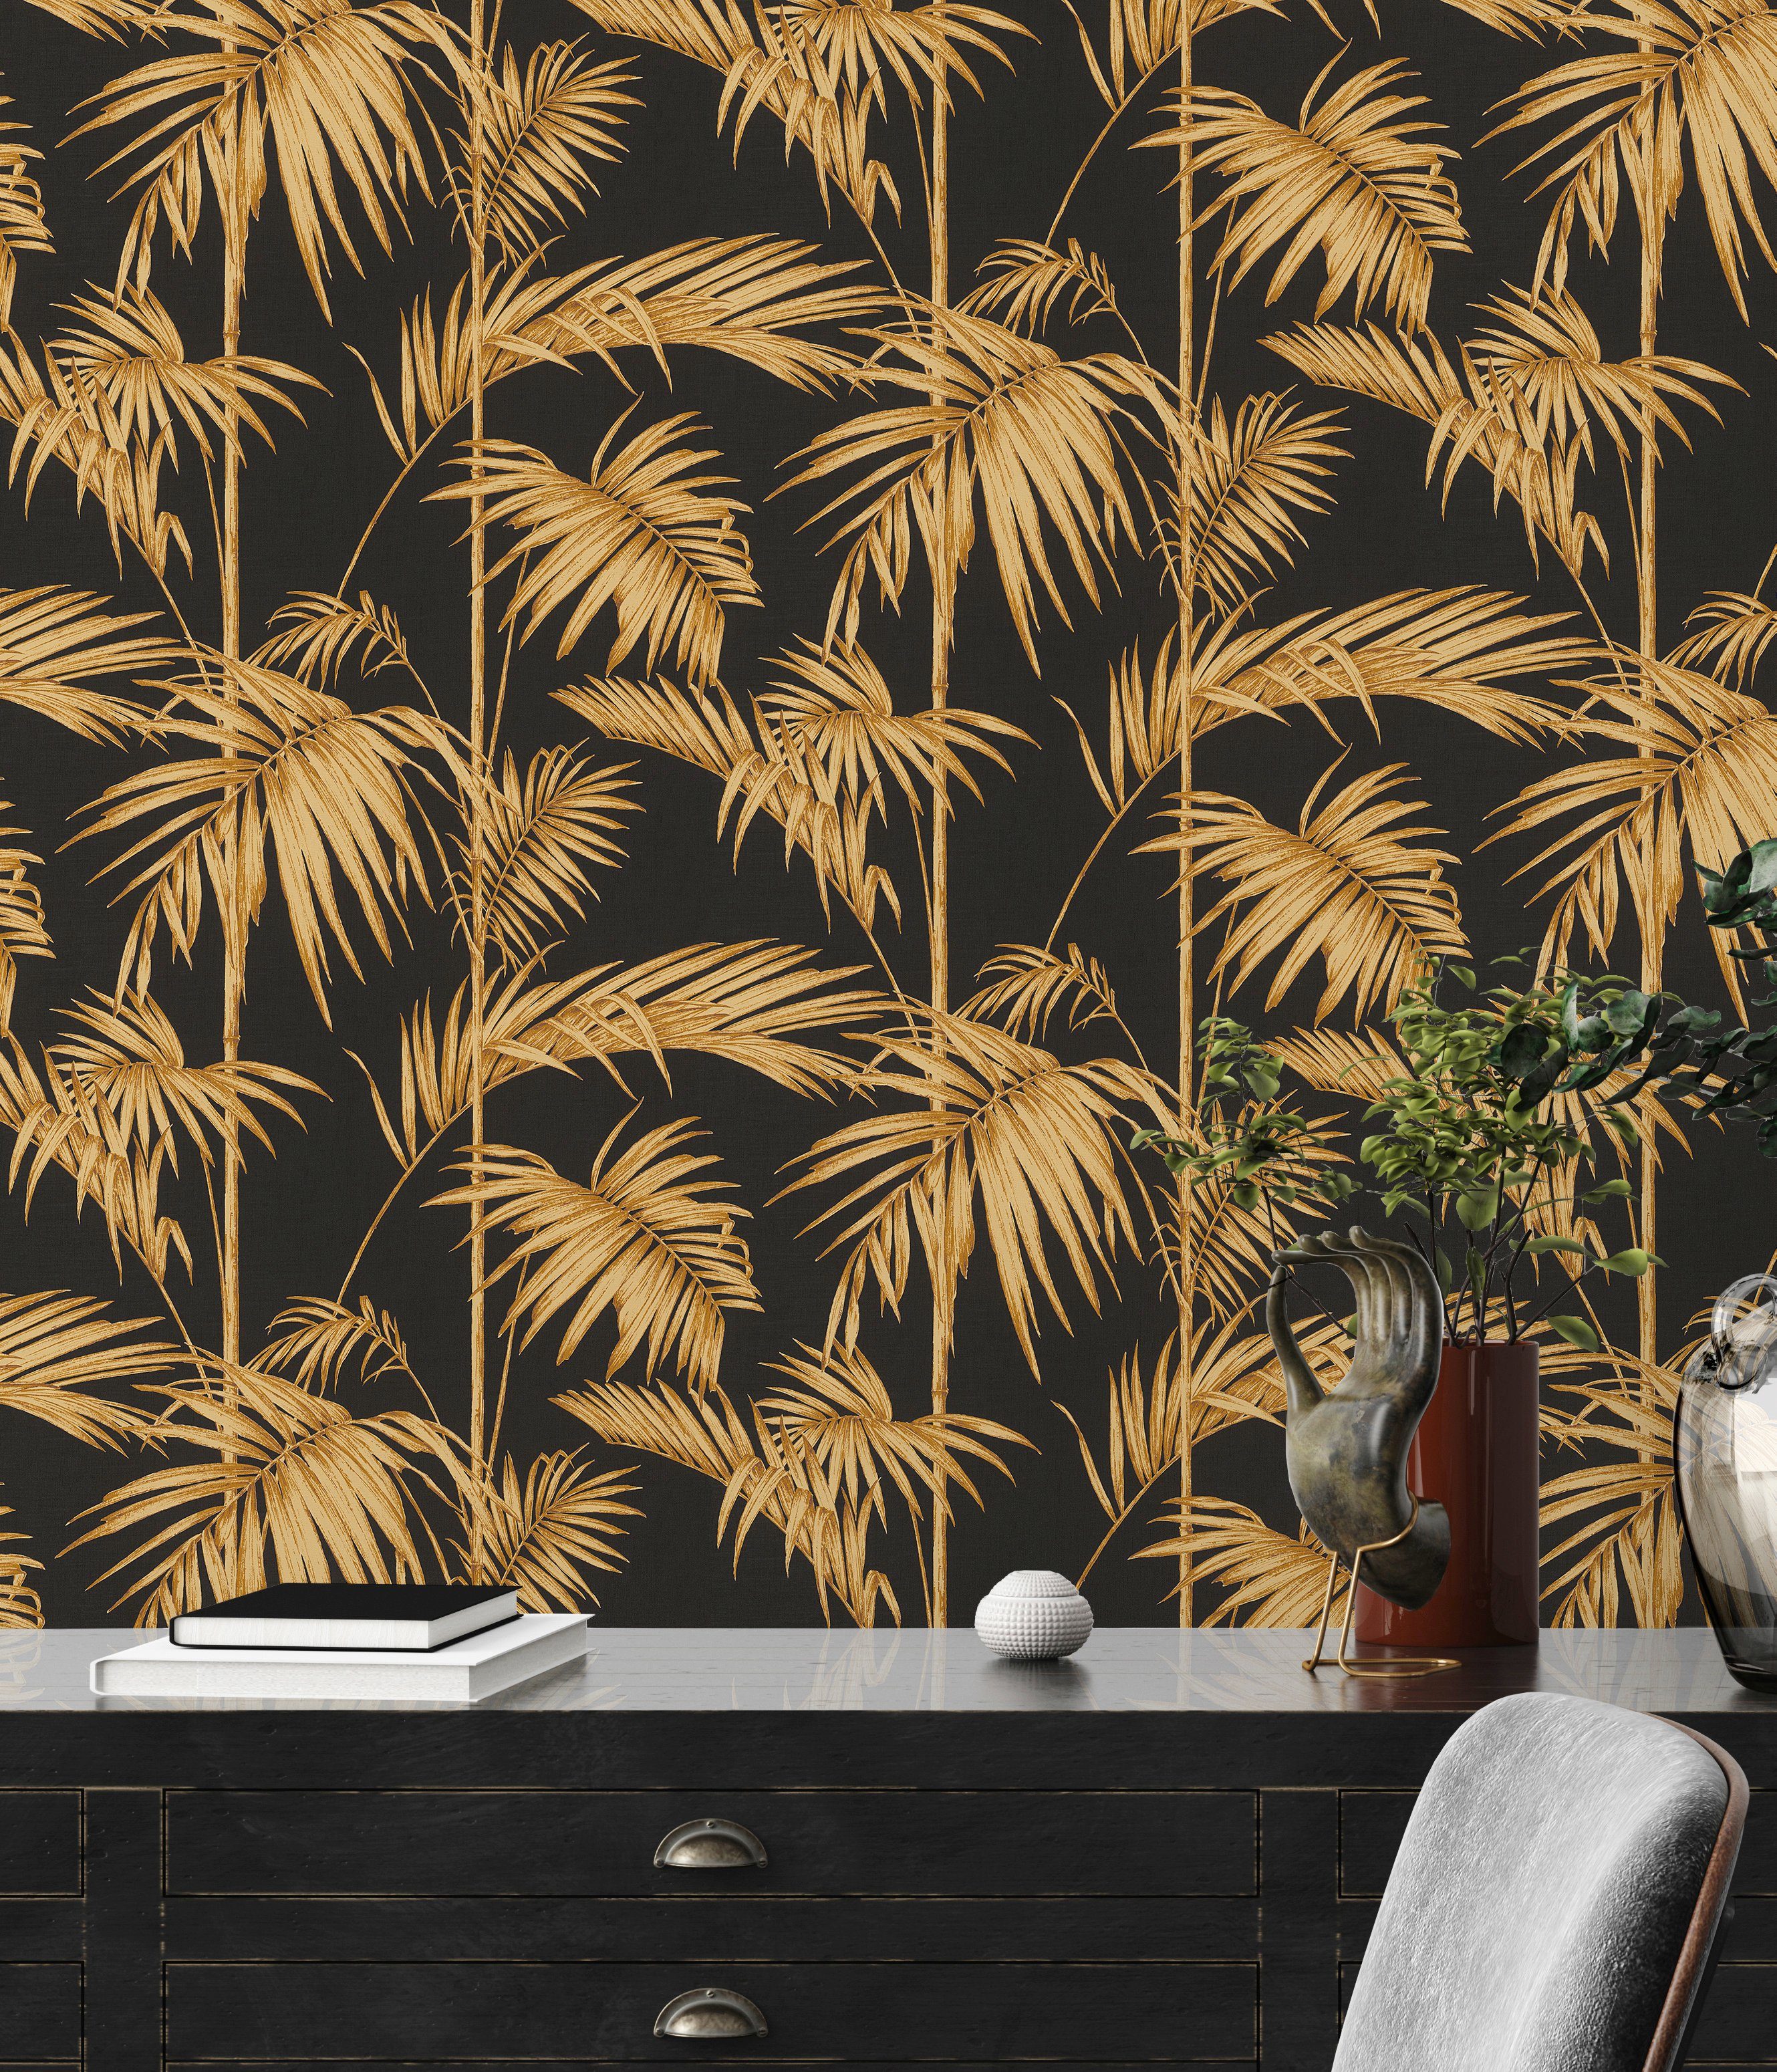 A.S. Metropolitan Paris, Tapete Vliestapete Lola living Palmen tropisch, Création botanisch, Stories dunkelbraun/goldfarben Floral walls